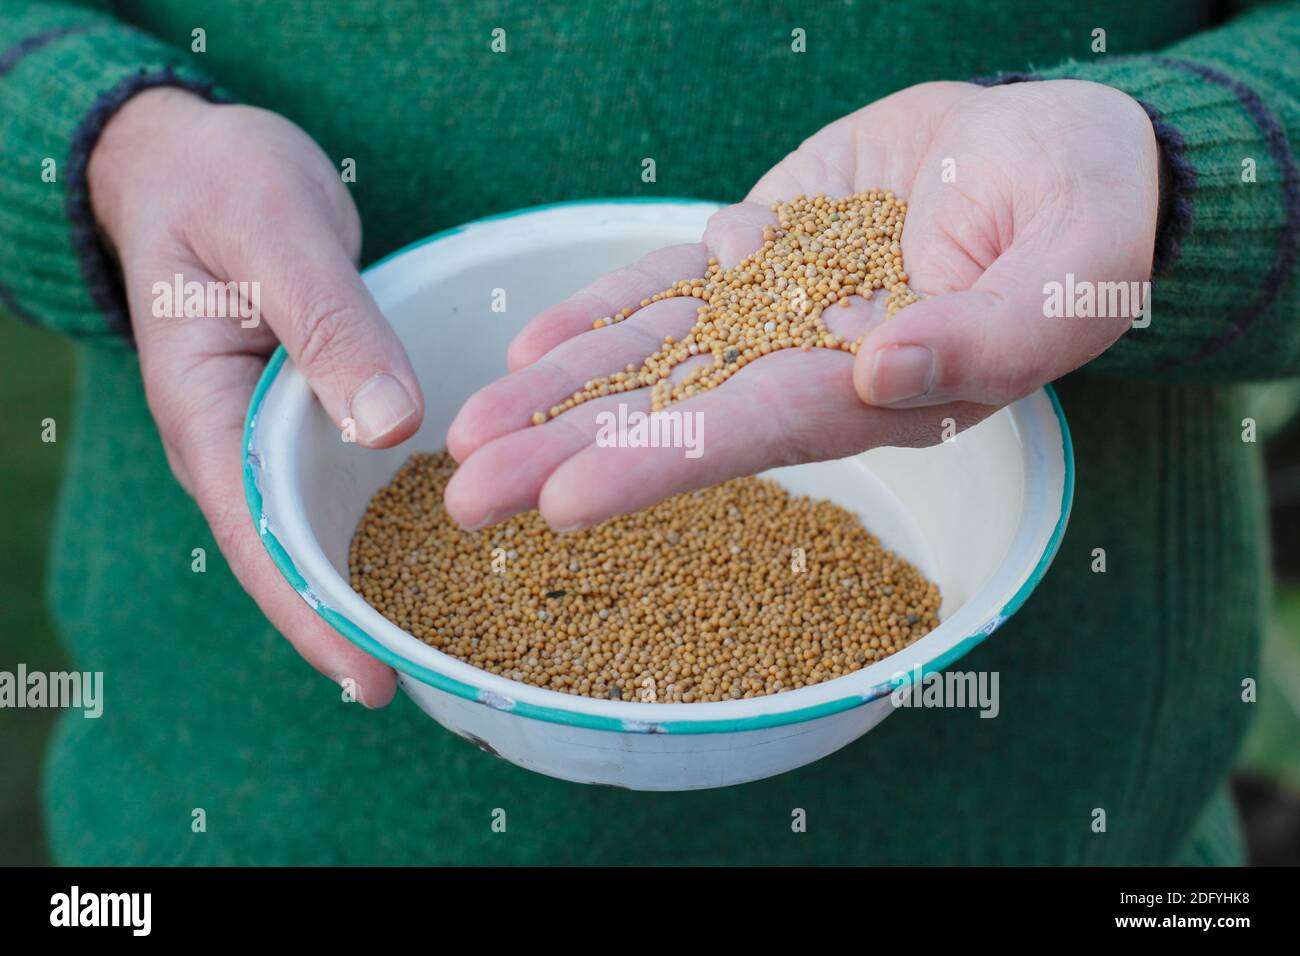 Fumier vert. Se préparer à semer la graine de fumier vert de moutarde 'White Tilney' à la main pour aider à la structure du sol et aider à prévenir les mauvaises herbes dans une parcelle de légumes. ROYAUME-UNI Banque D'Images